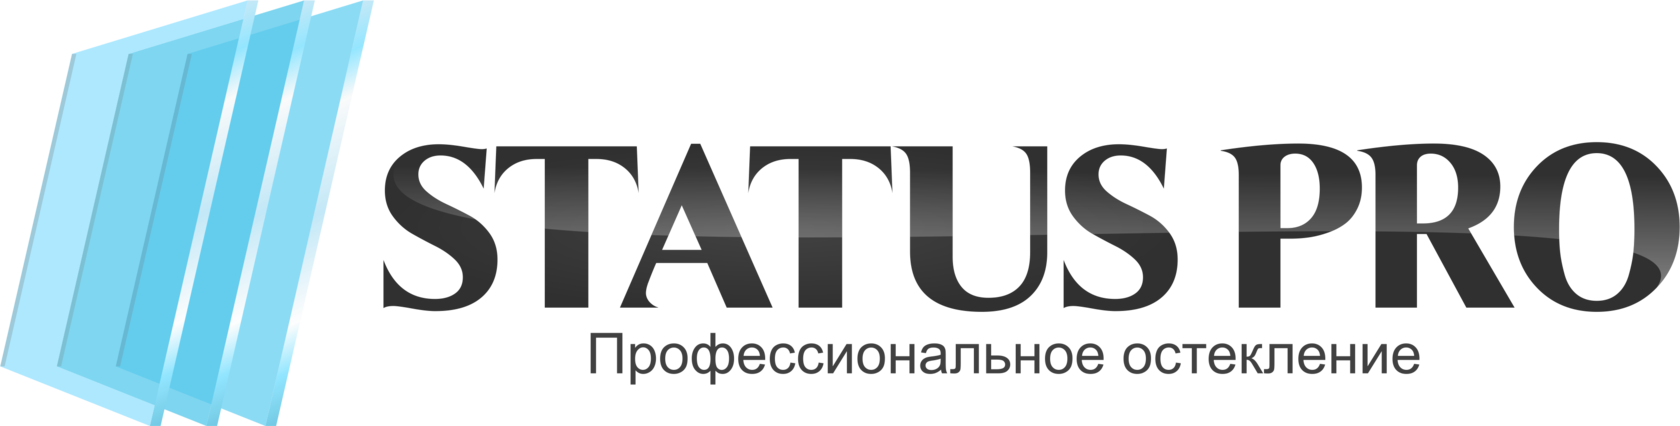 Status Pro logo